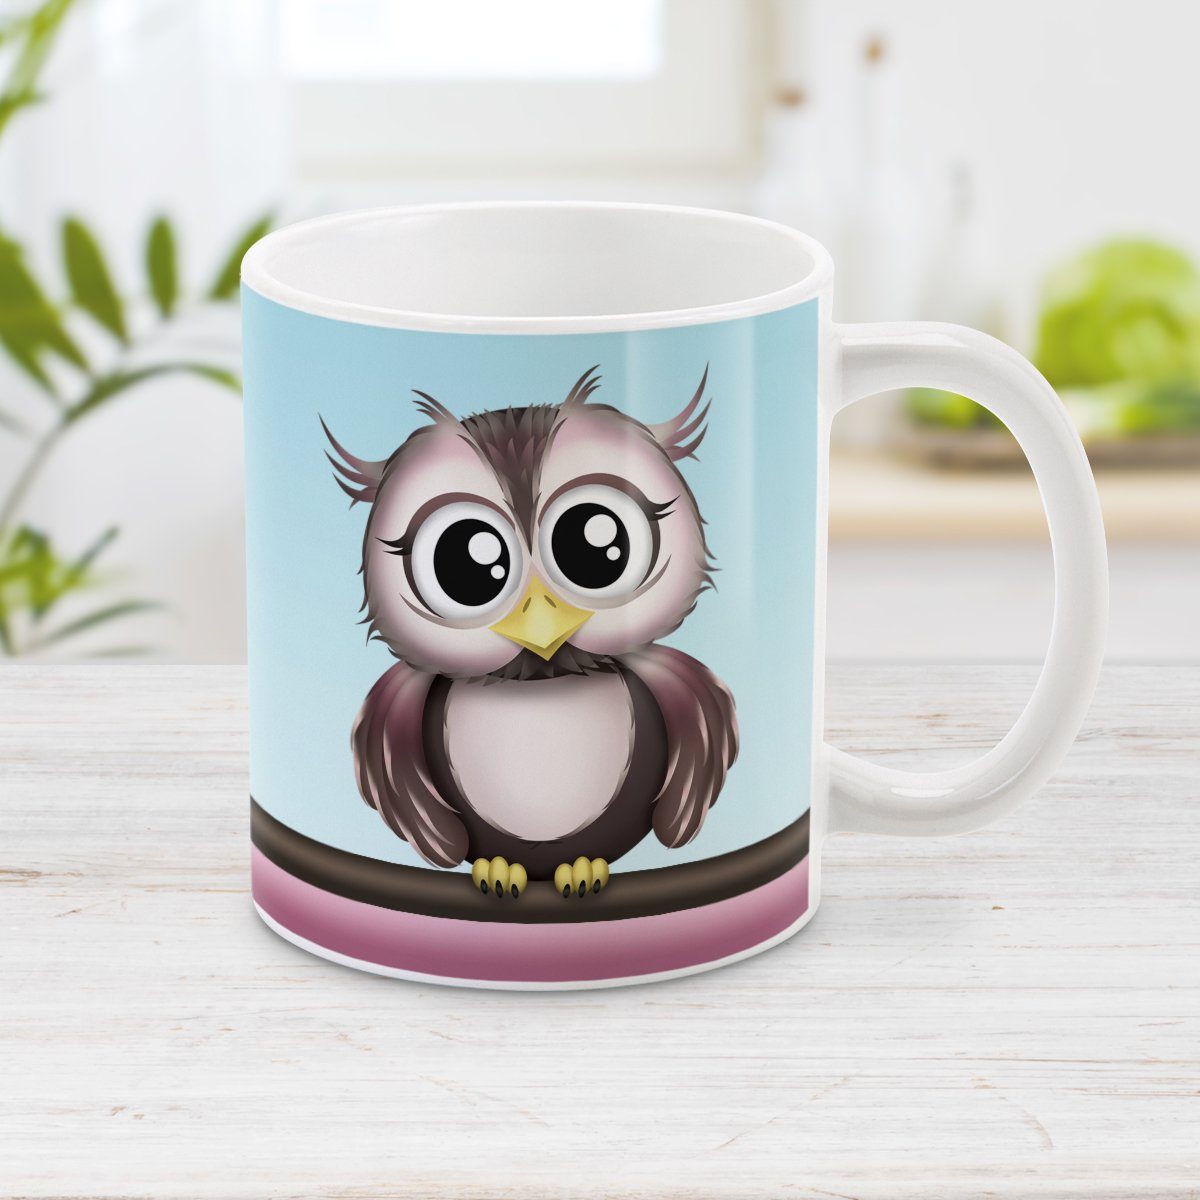 Owl Mug - Adorable Pink and Brown Owl Mug at Amys' Coffee Mugs